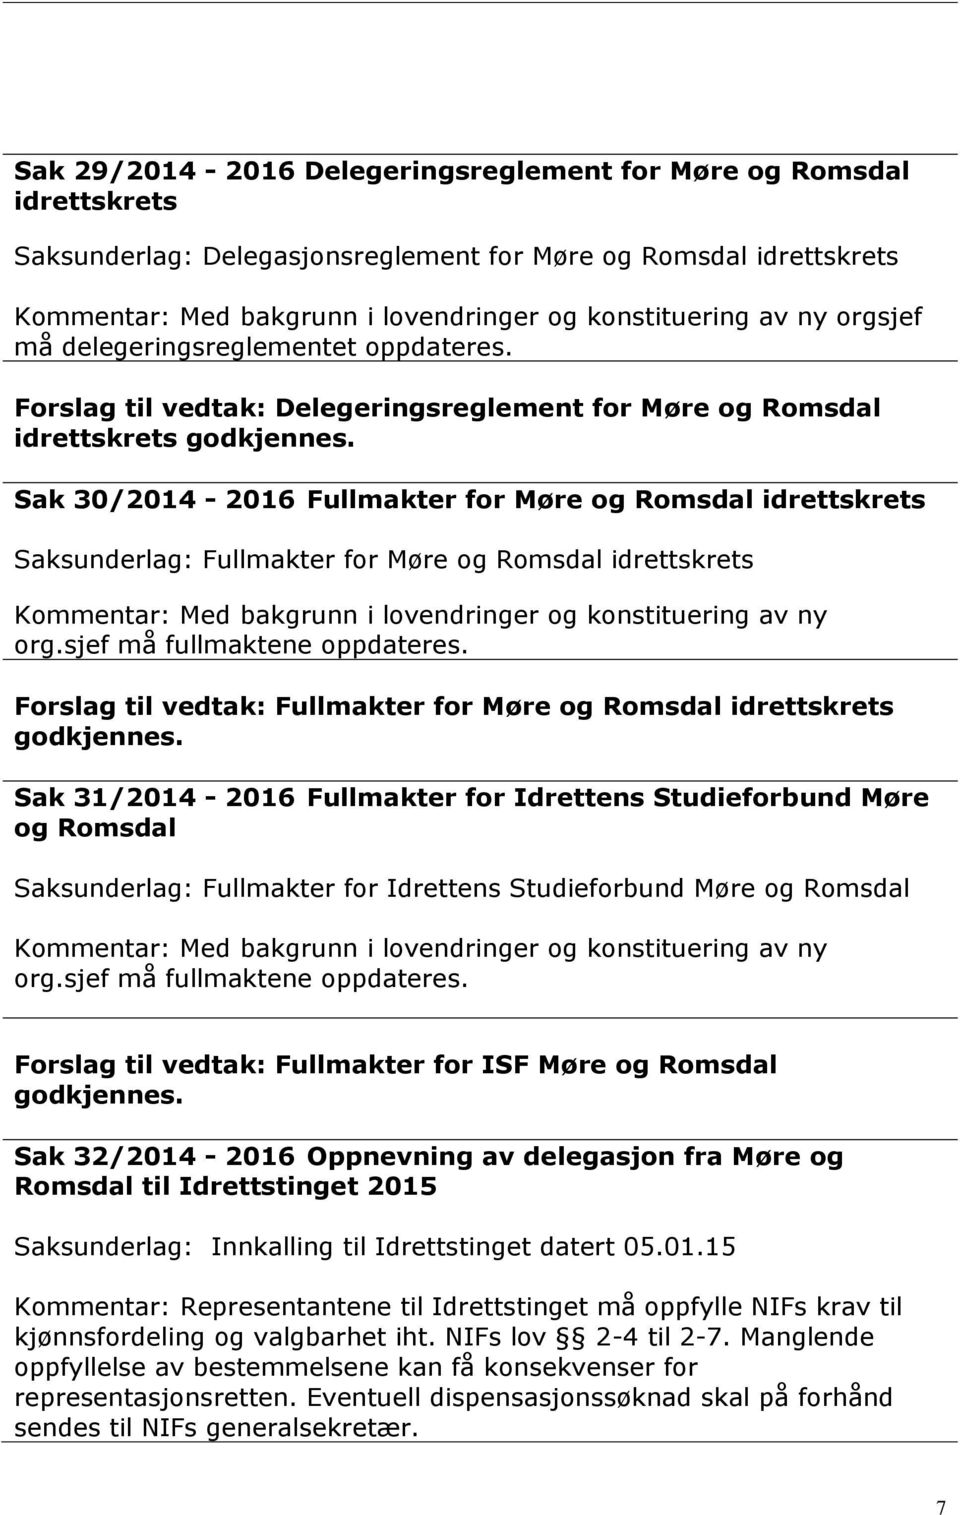 Sak 30/2014-2016 Fullmakter for Møre og Romsdal idrettskrets Saksunderlag: Fullmakter for Møre og Romsdal idrettskrets Kommentar: Med bakgrunn i lovendringer og konstituering av ny org.